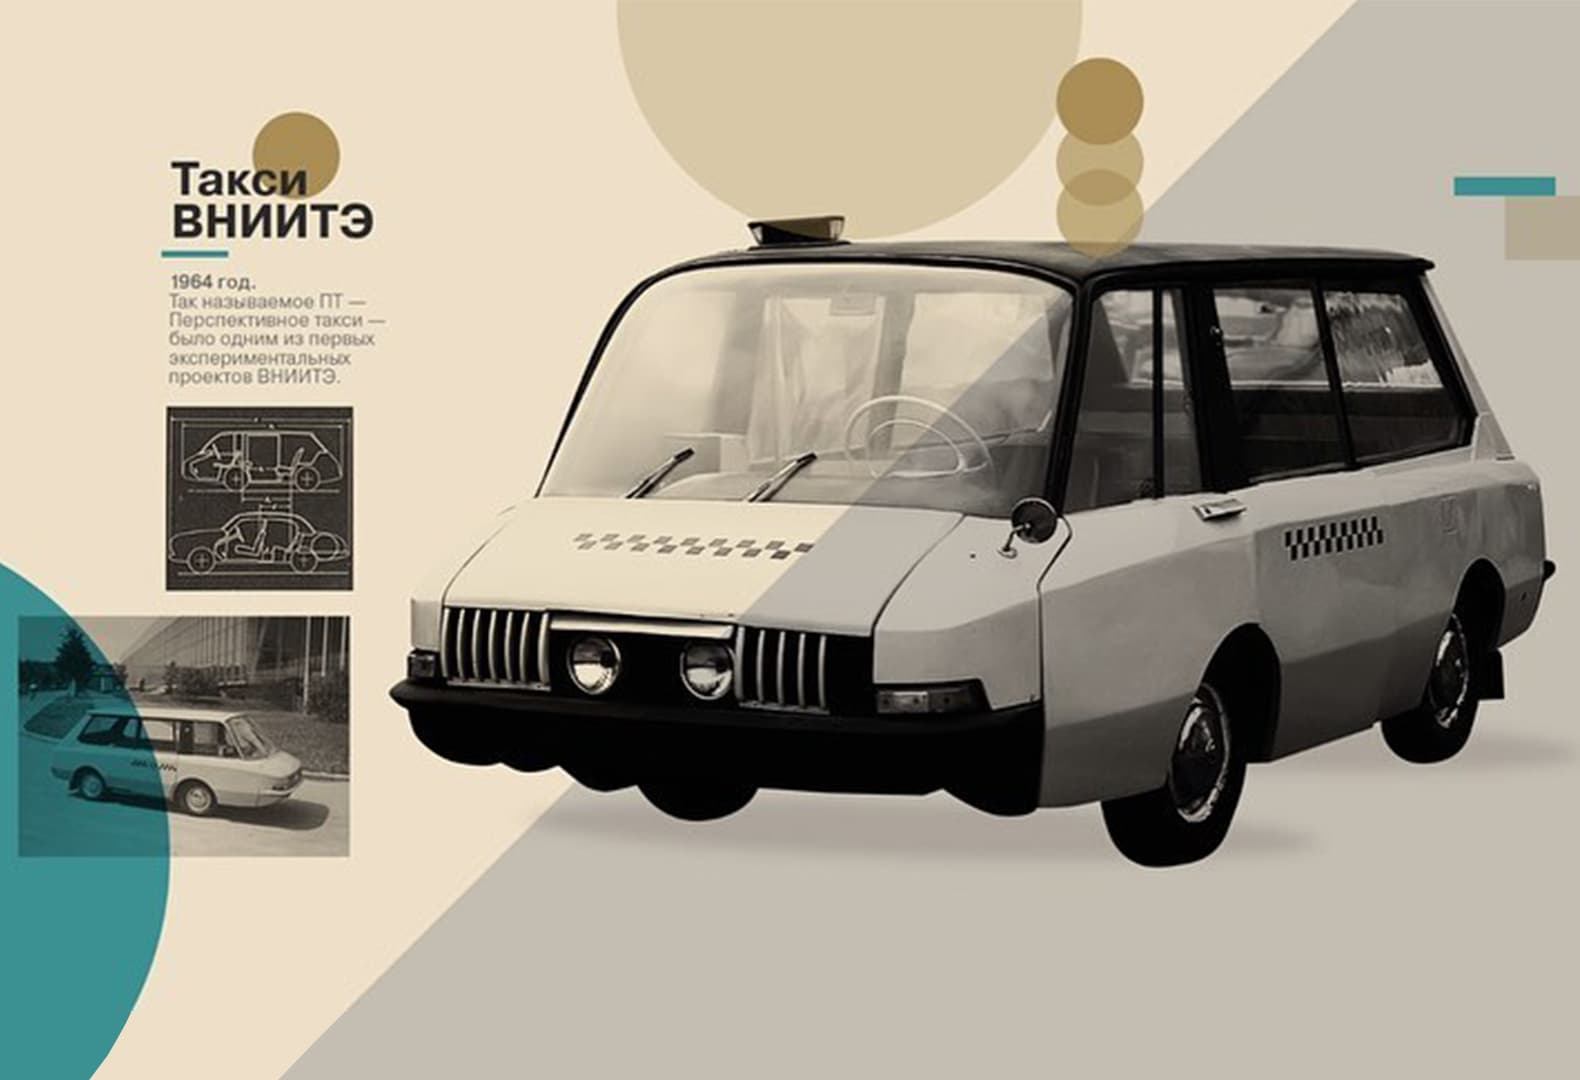 такси ВНИИТЭ-ПТ 1964 года